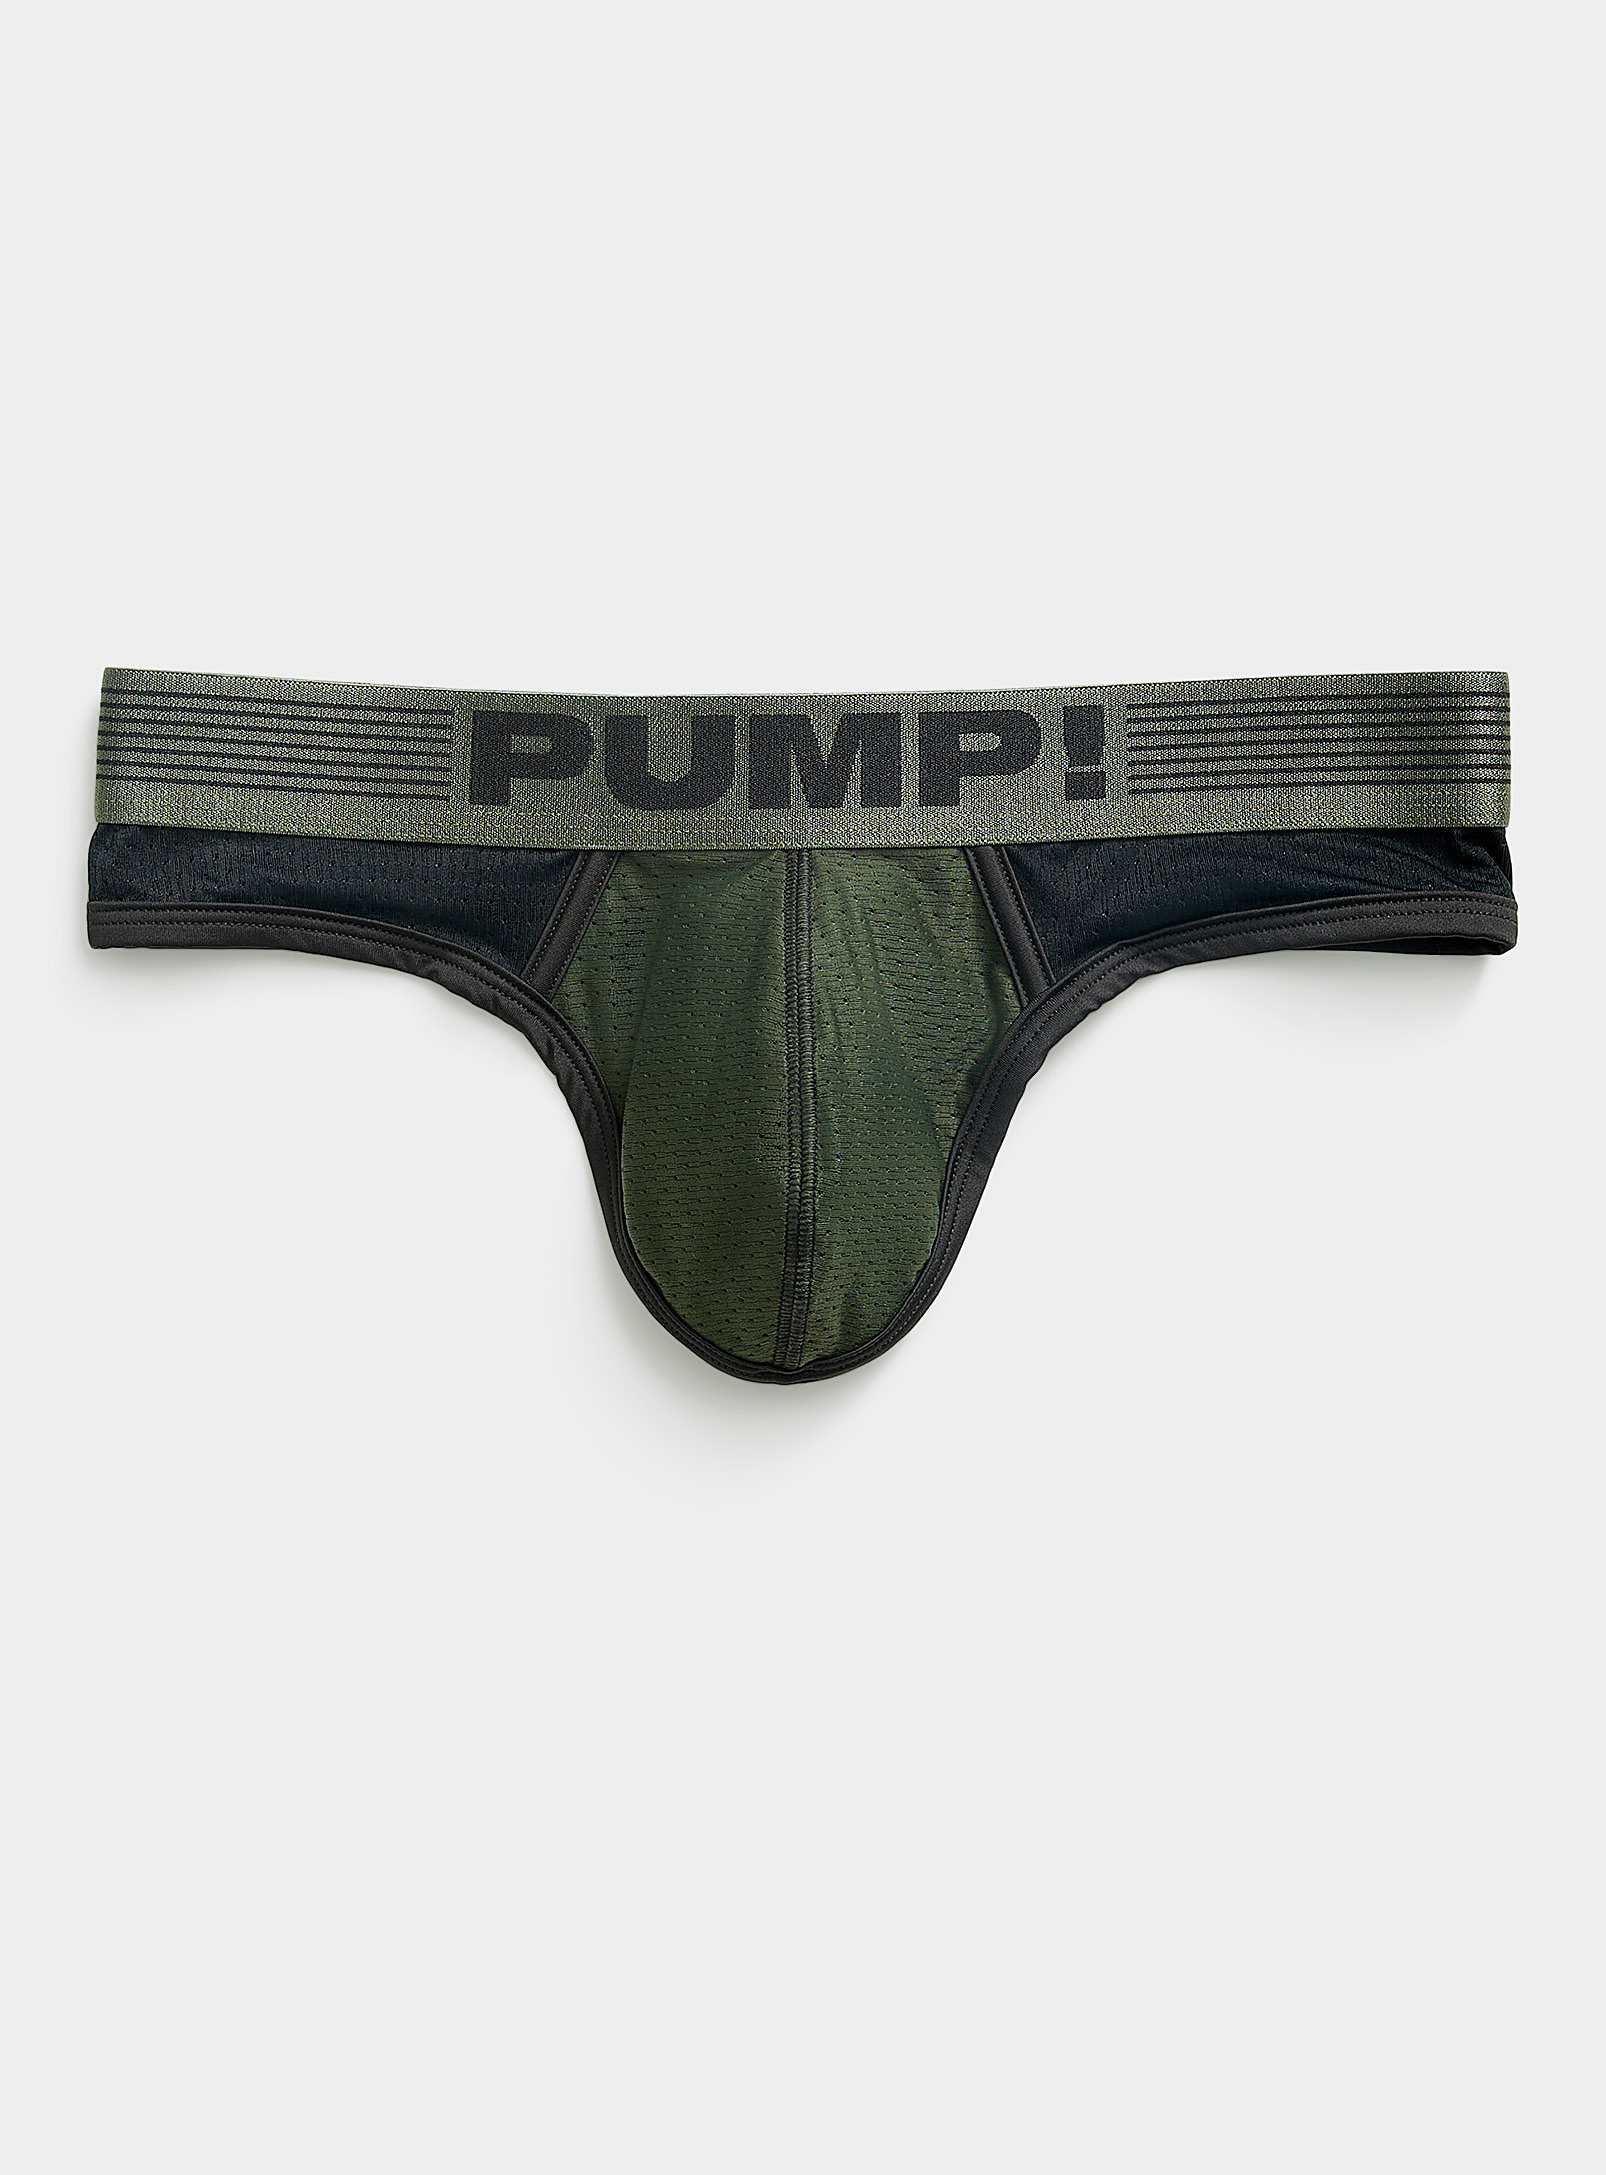 Pump! - Le tanga Military